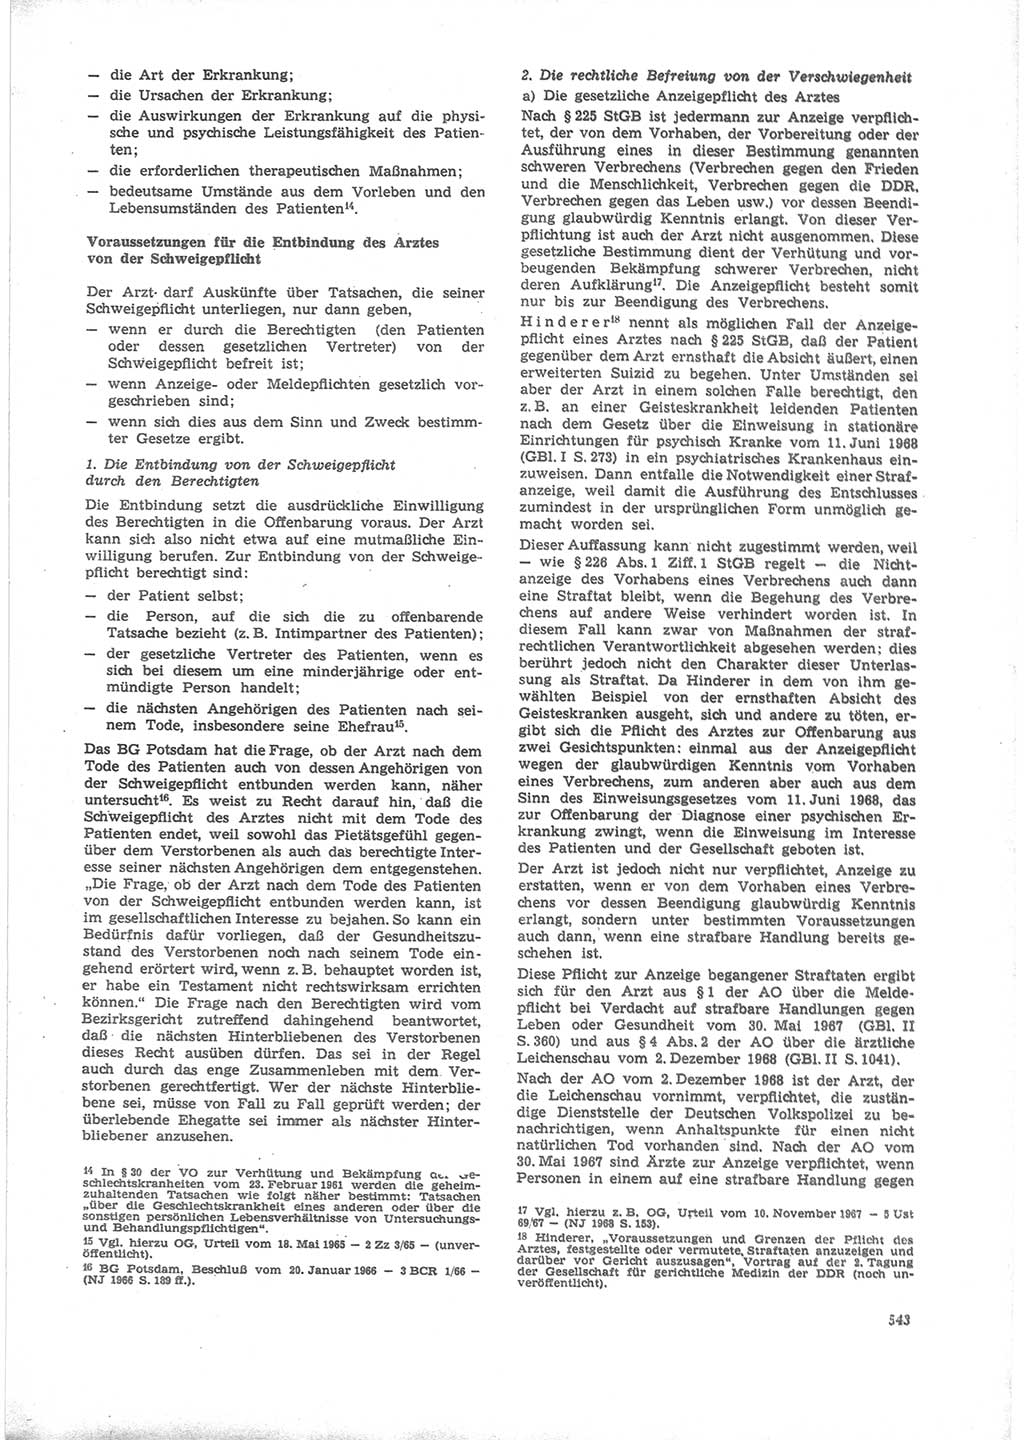 Neue Justiz (NJ), Zeitschrift für Recht und Rechtswissenschaft [Deutsche Demokratische Republik (DDR)], 24. Jahrgang 1970, Seite 543 (NJ DDR 1970, S. 543)